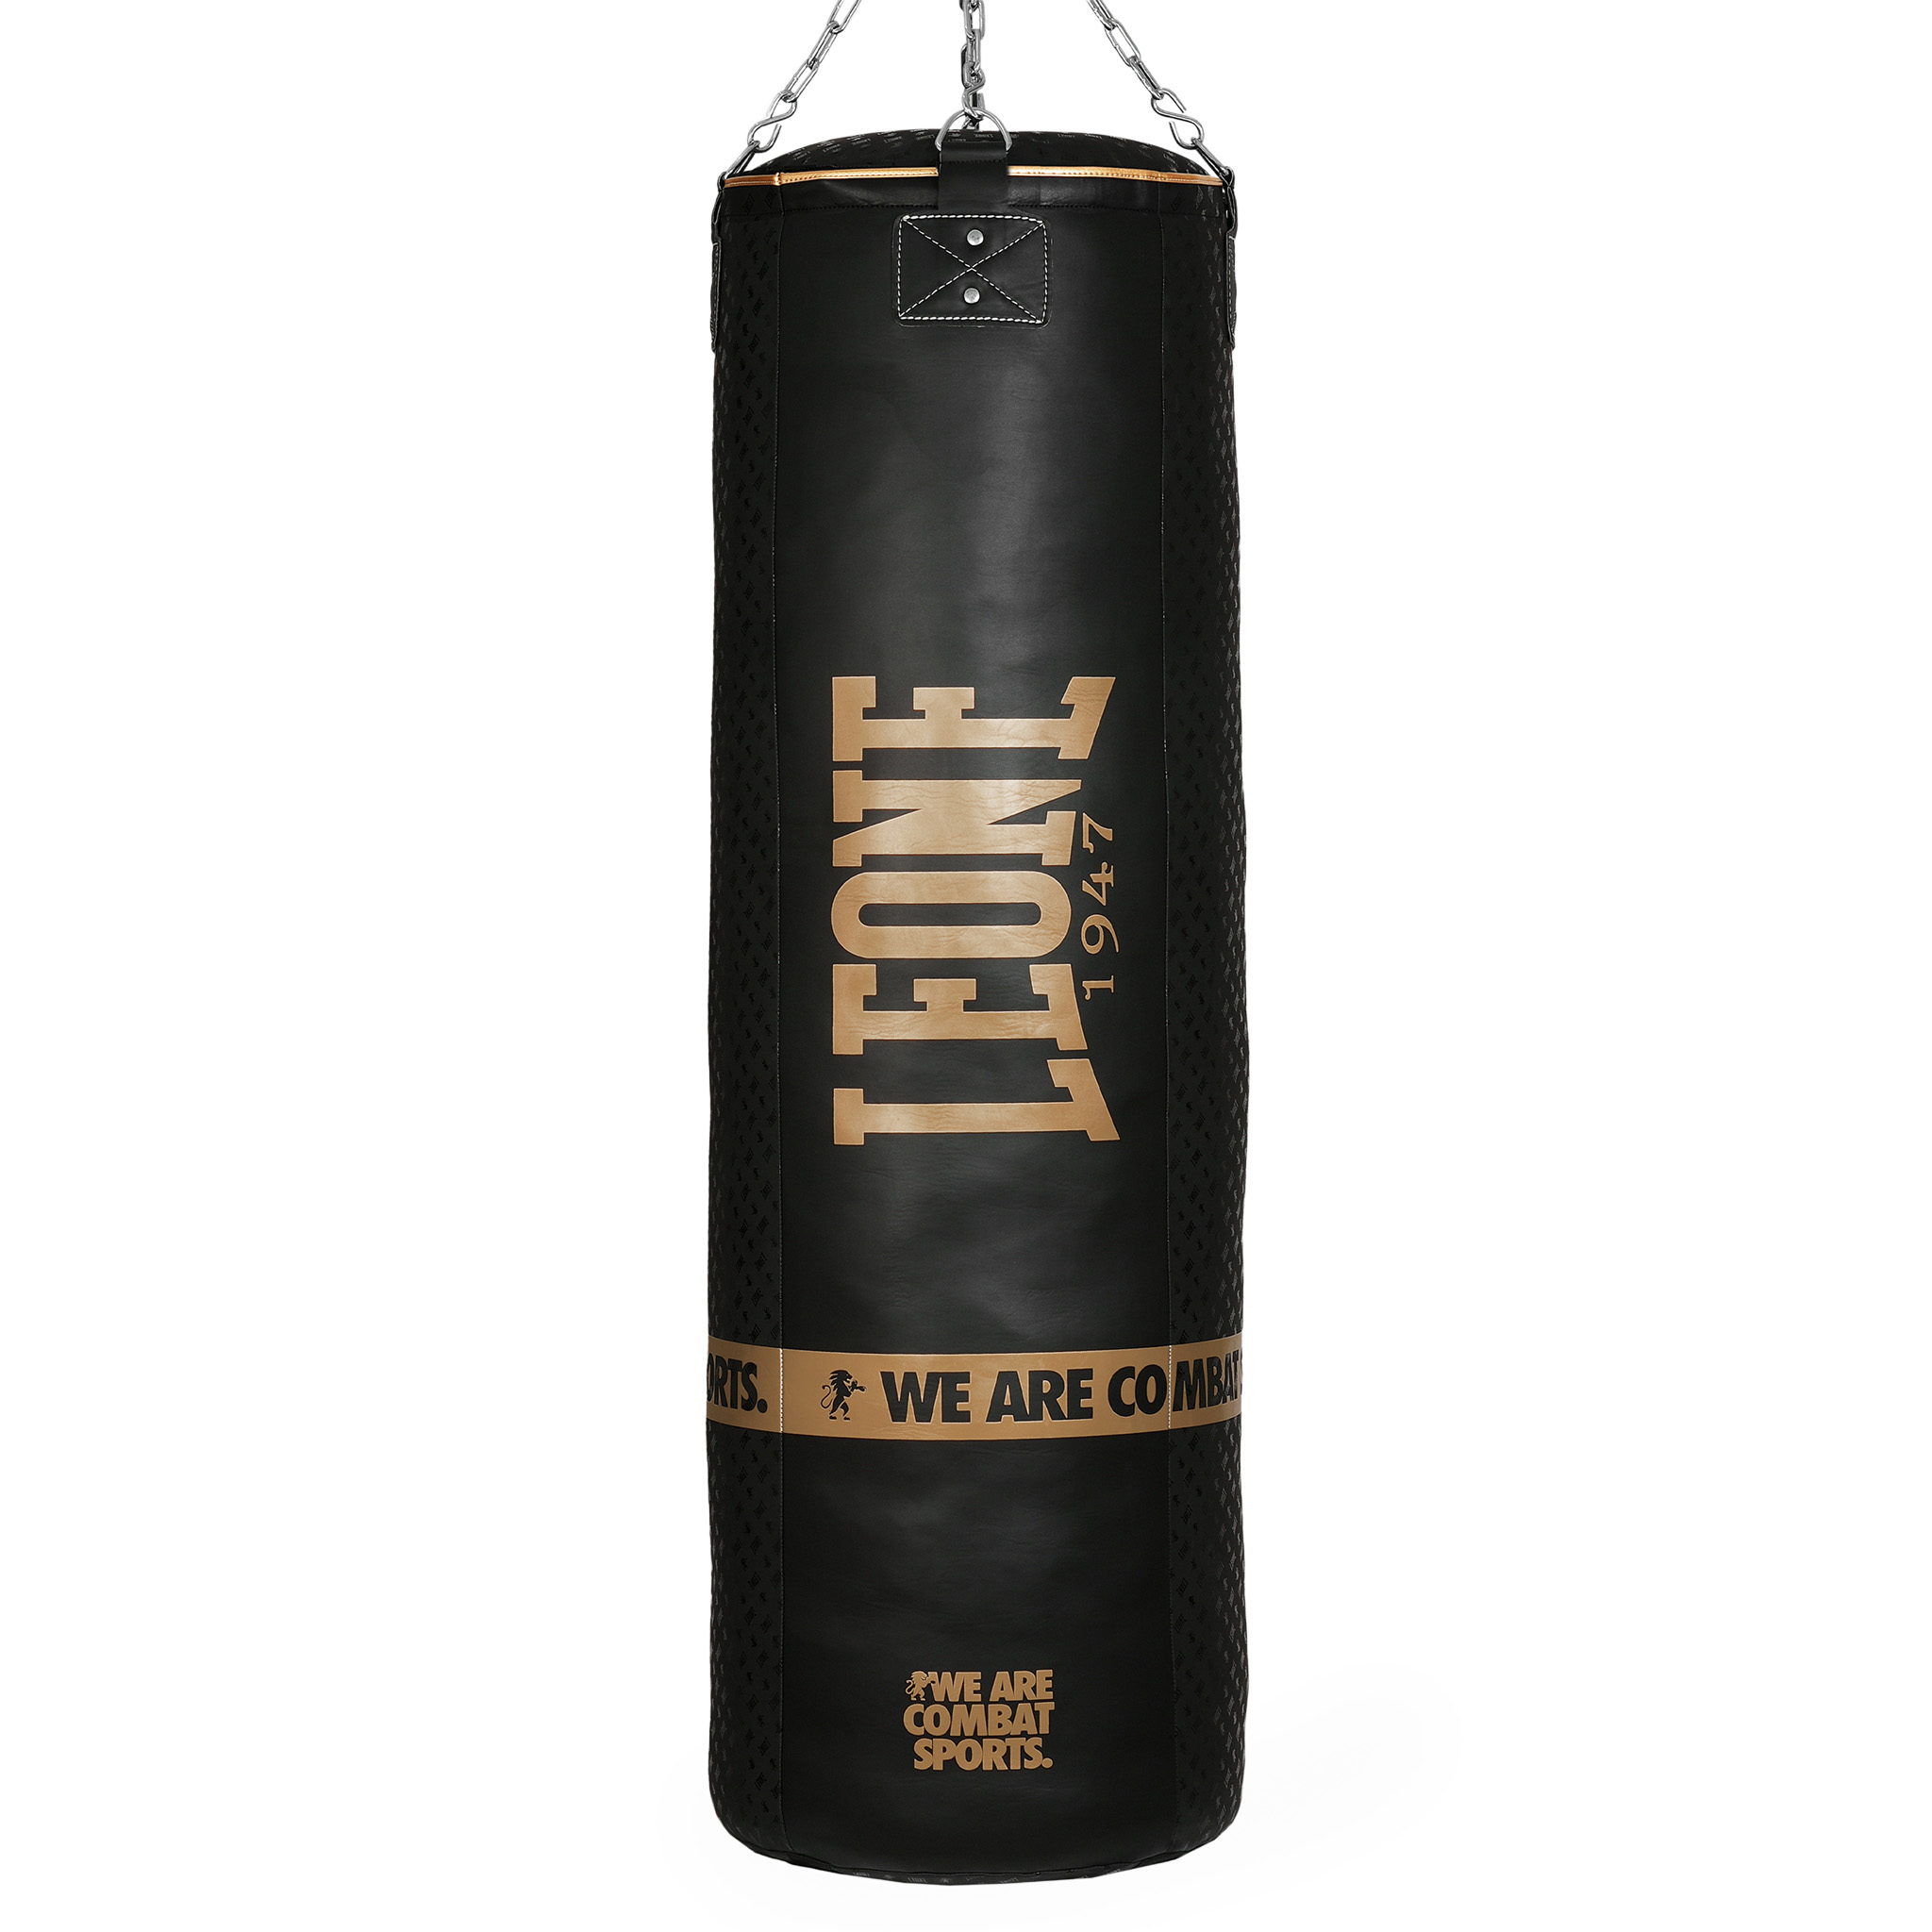 AT856 Saco de Boxeo profesional de 60 kg Leone 1947 DNA King size